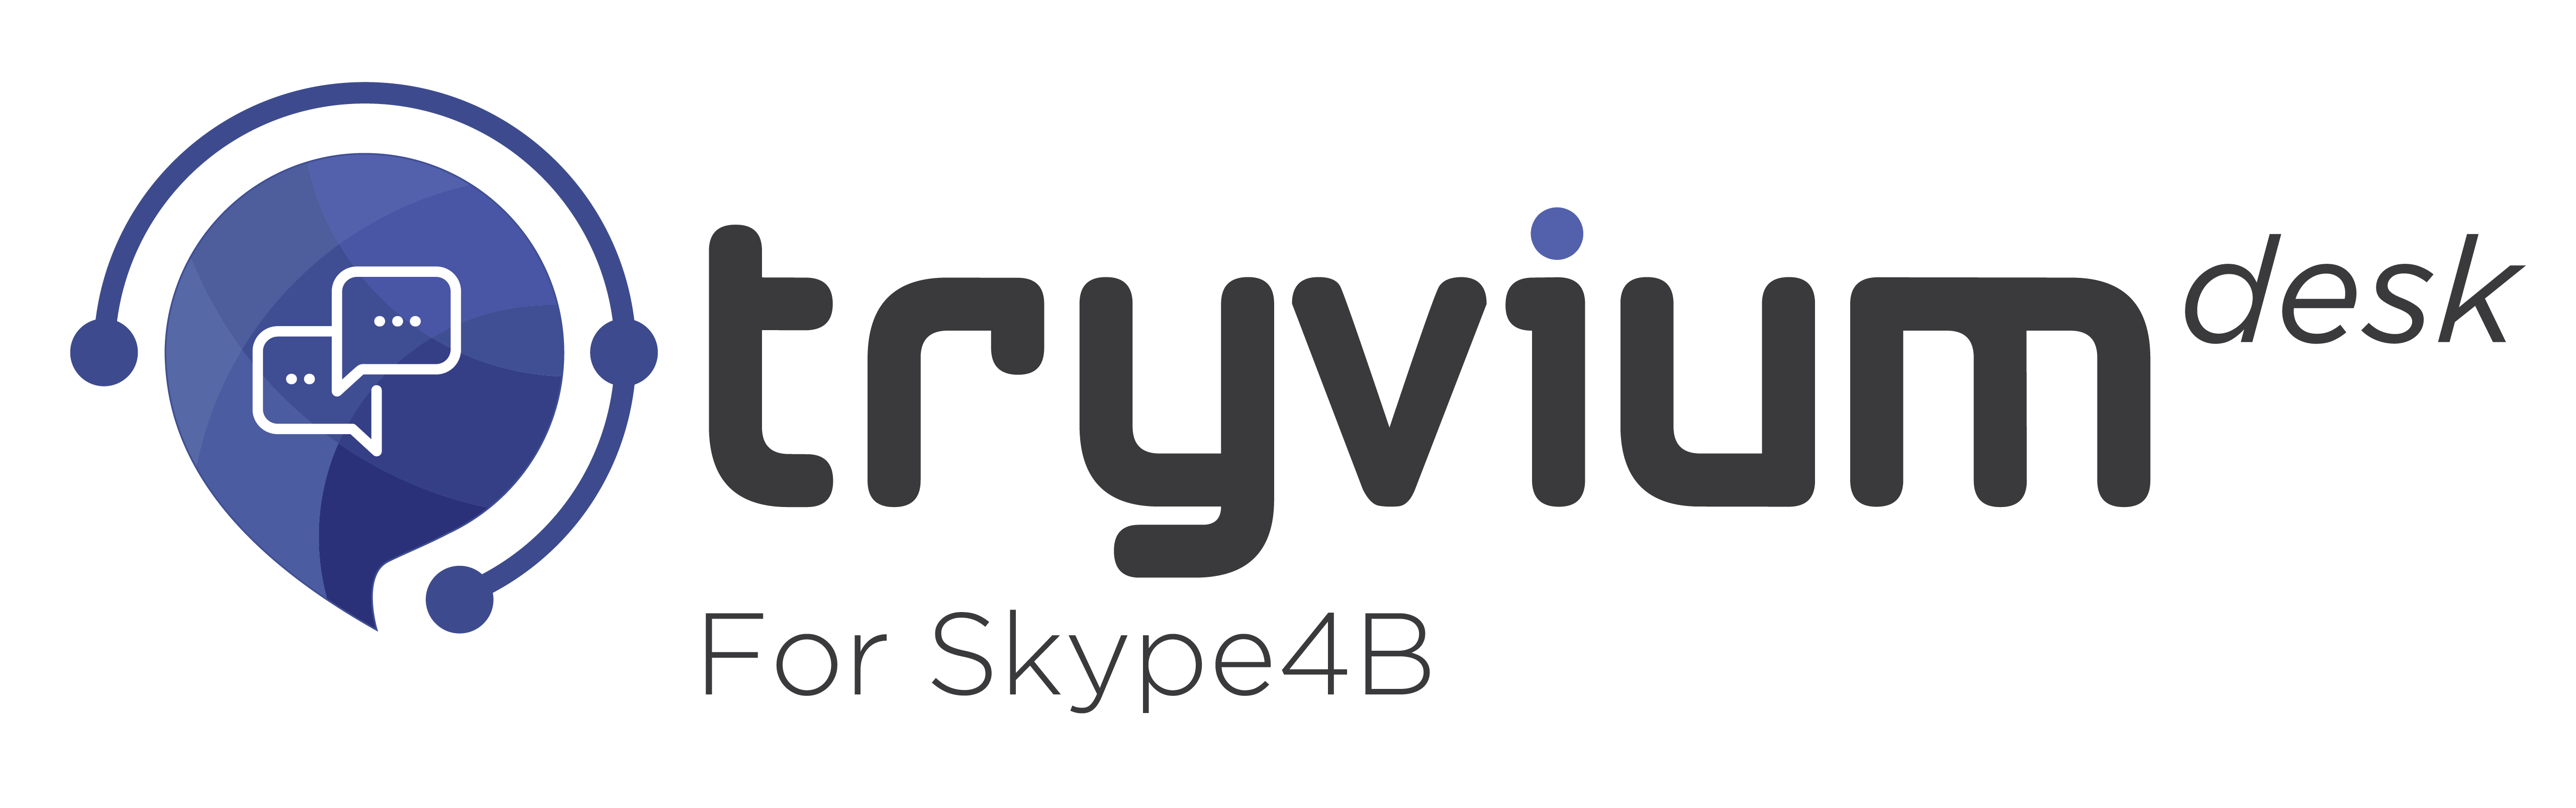 Remedyforce Logo - Skype for Business(Lync) Integration| ServiceNow, Zendesk, Freshdesk ...